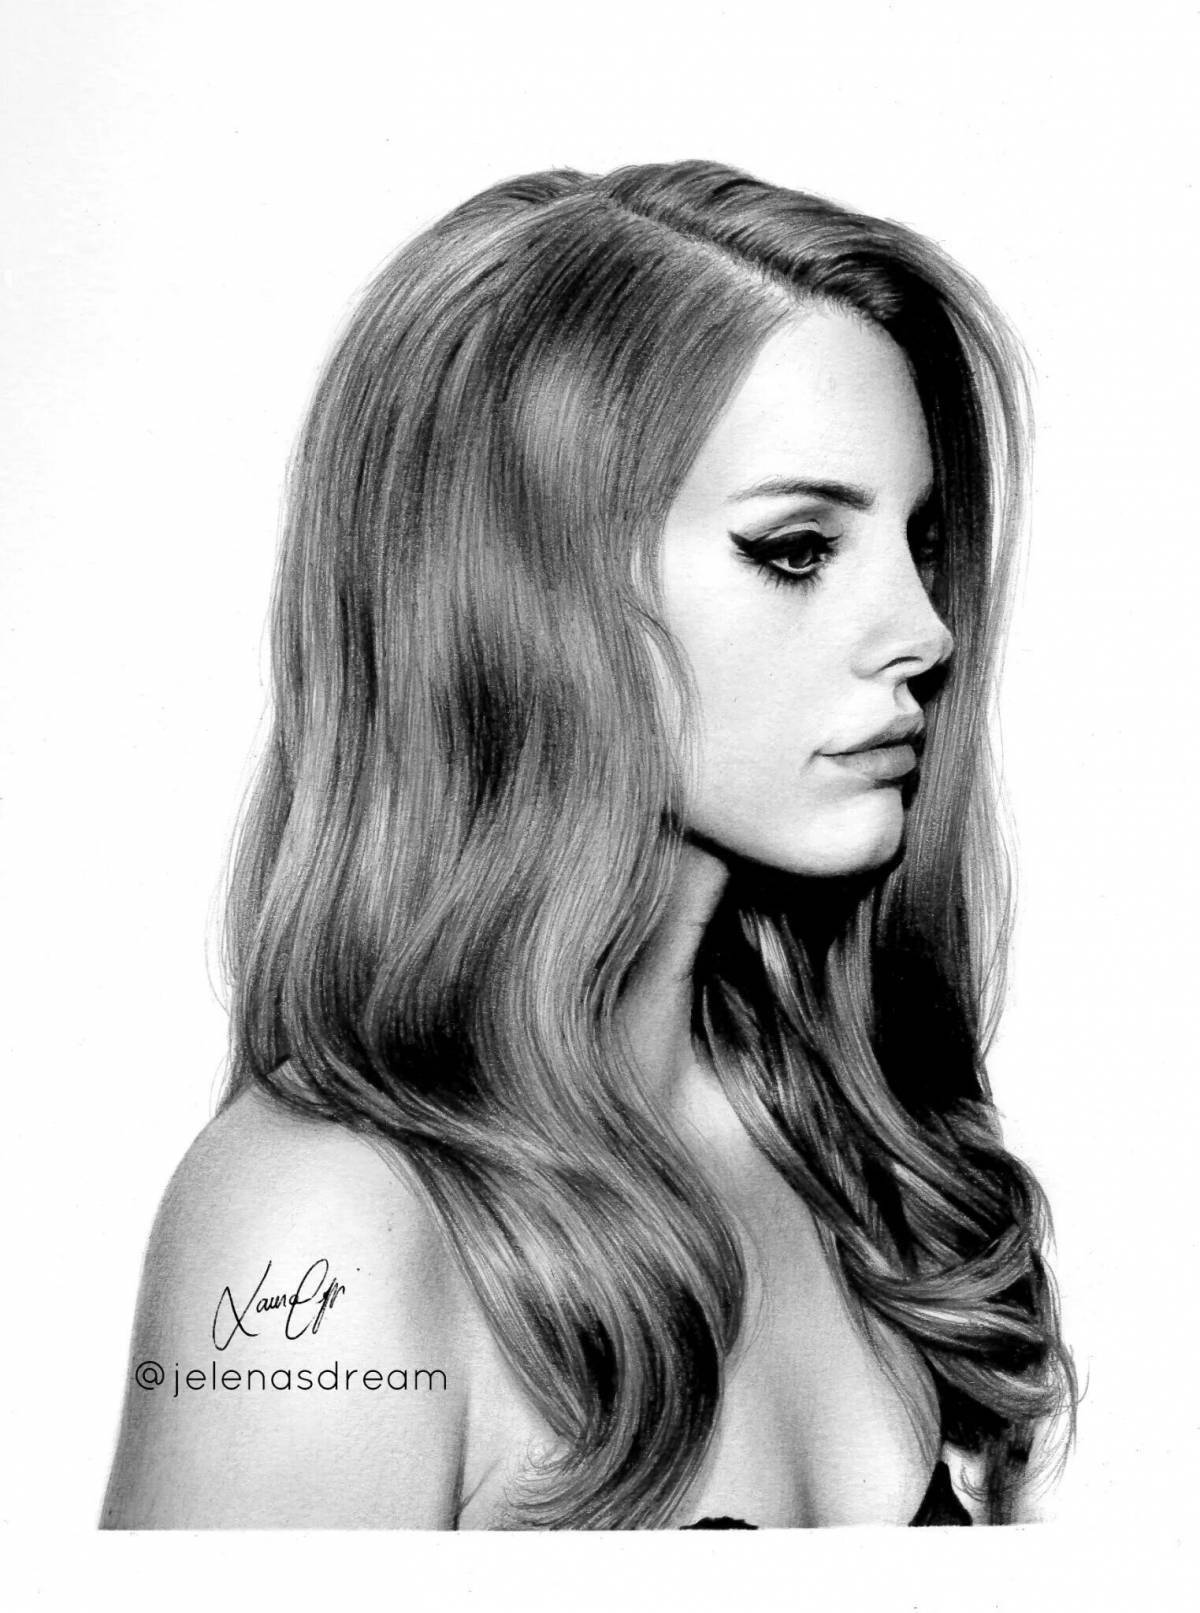 Lana Del Rey's wild coloring